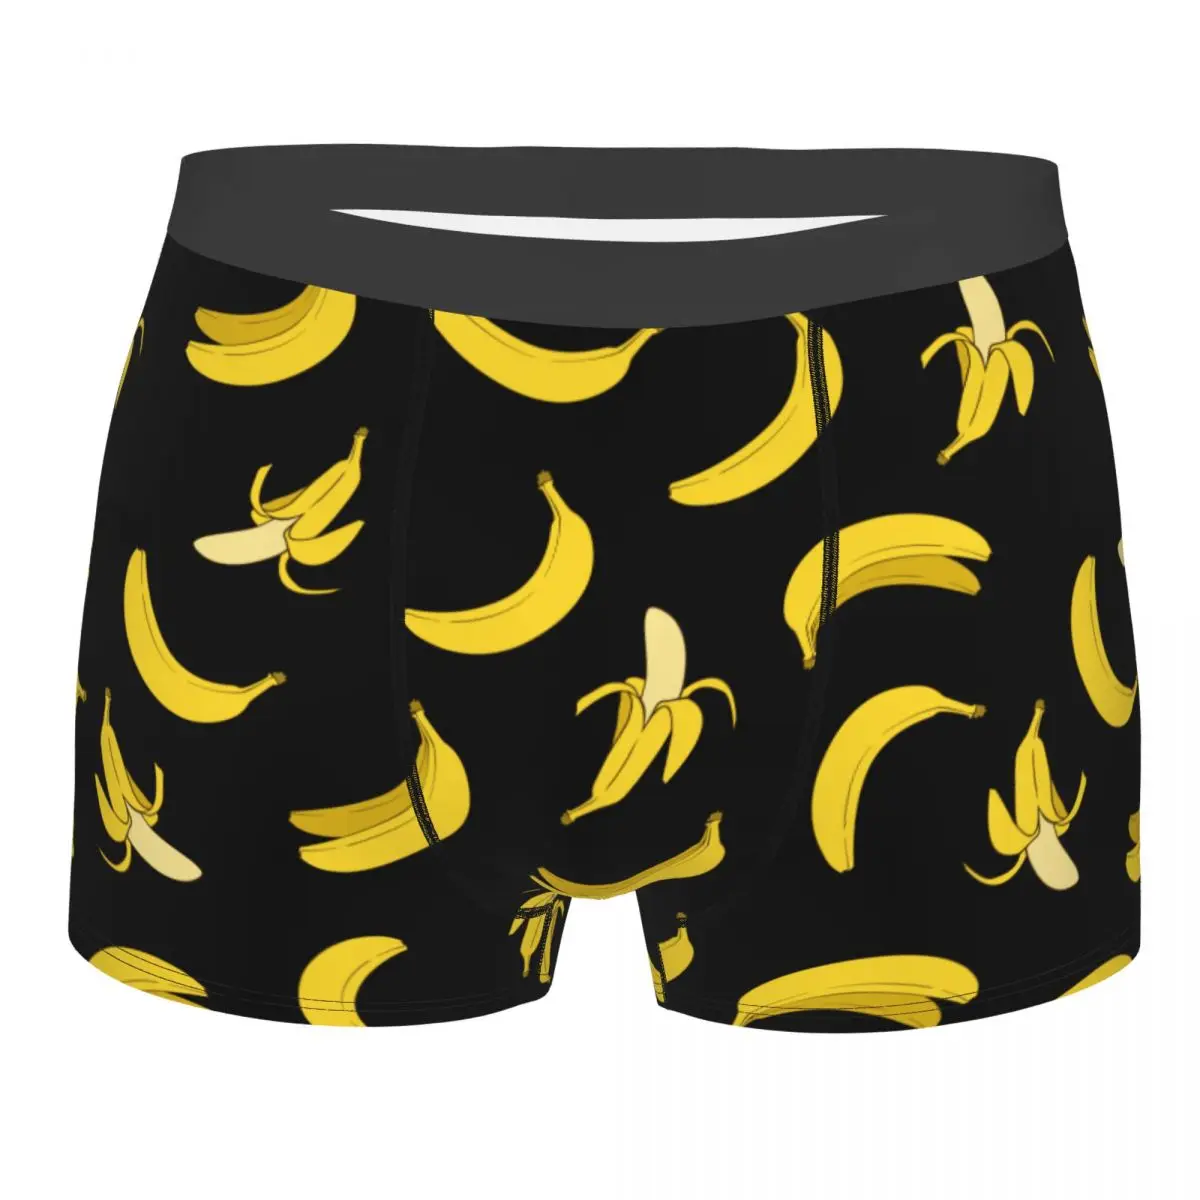 Calzoncillos bóxer de plátano para hombre, ropa interior divertida, suave, con frutas, de talla grande